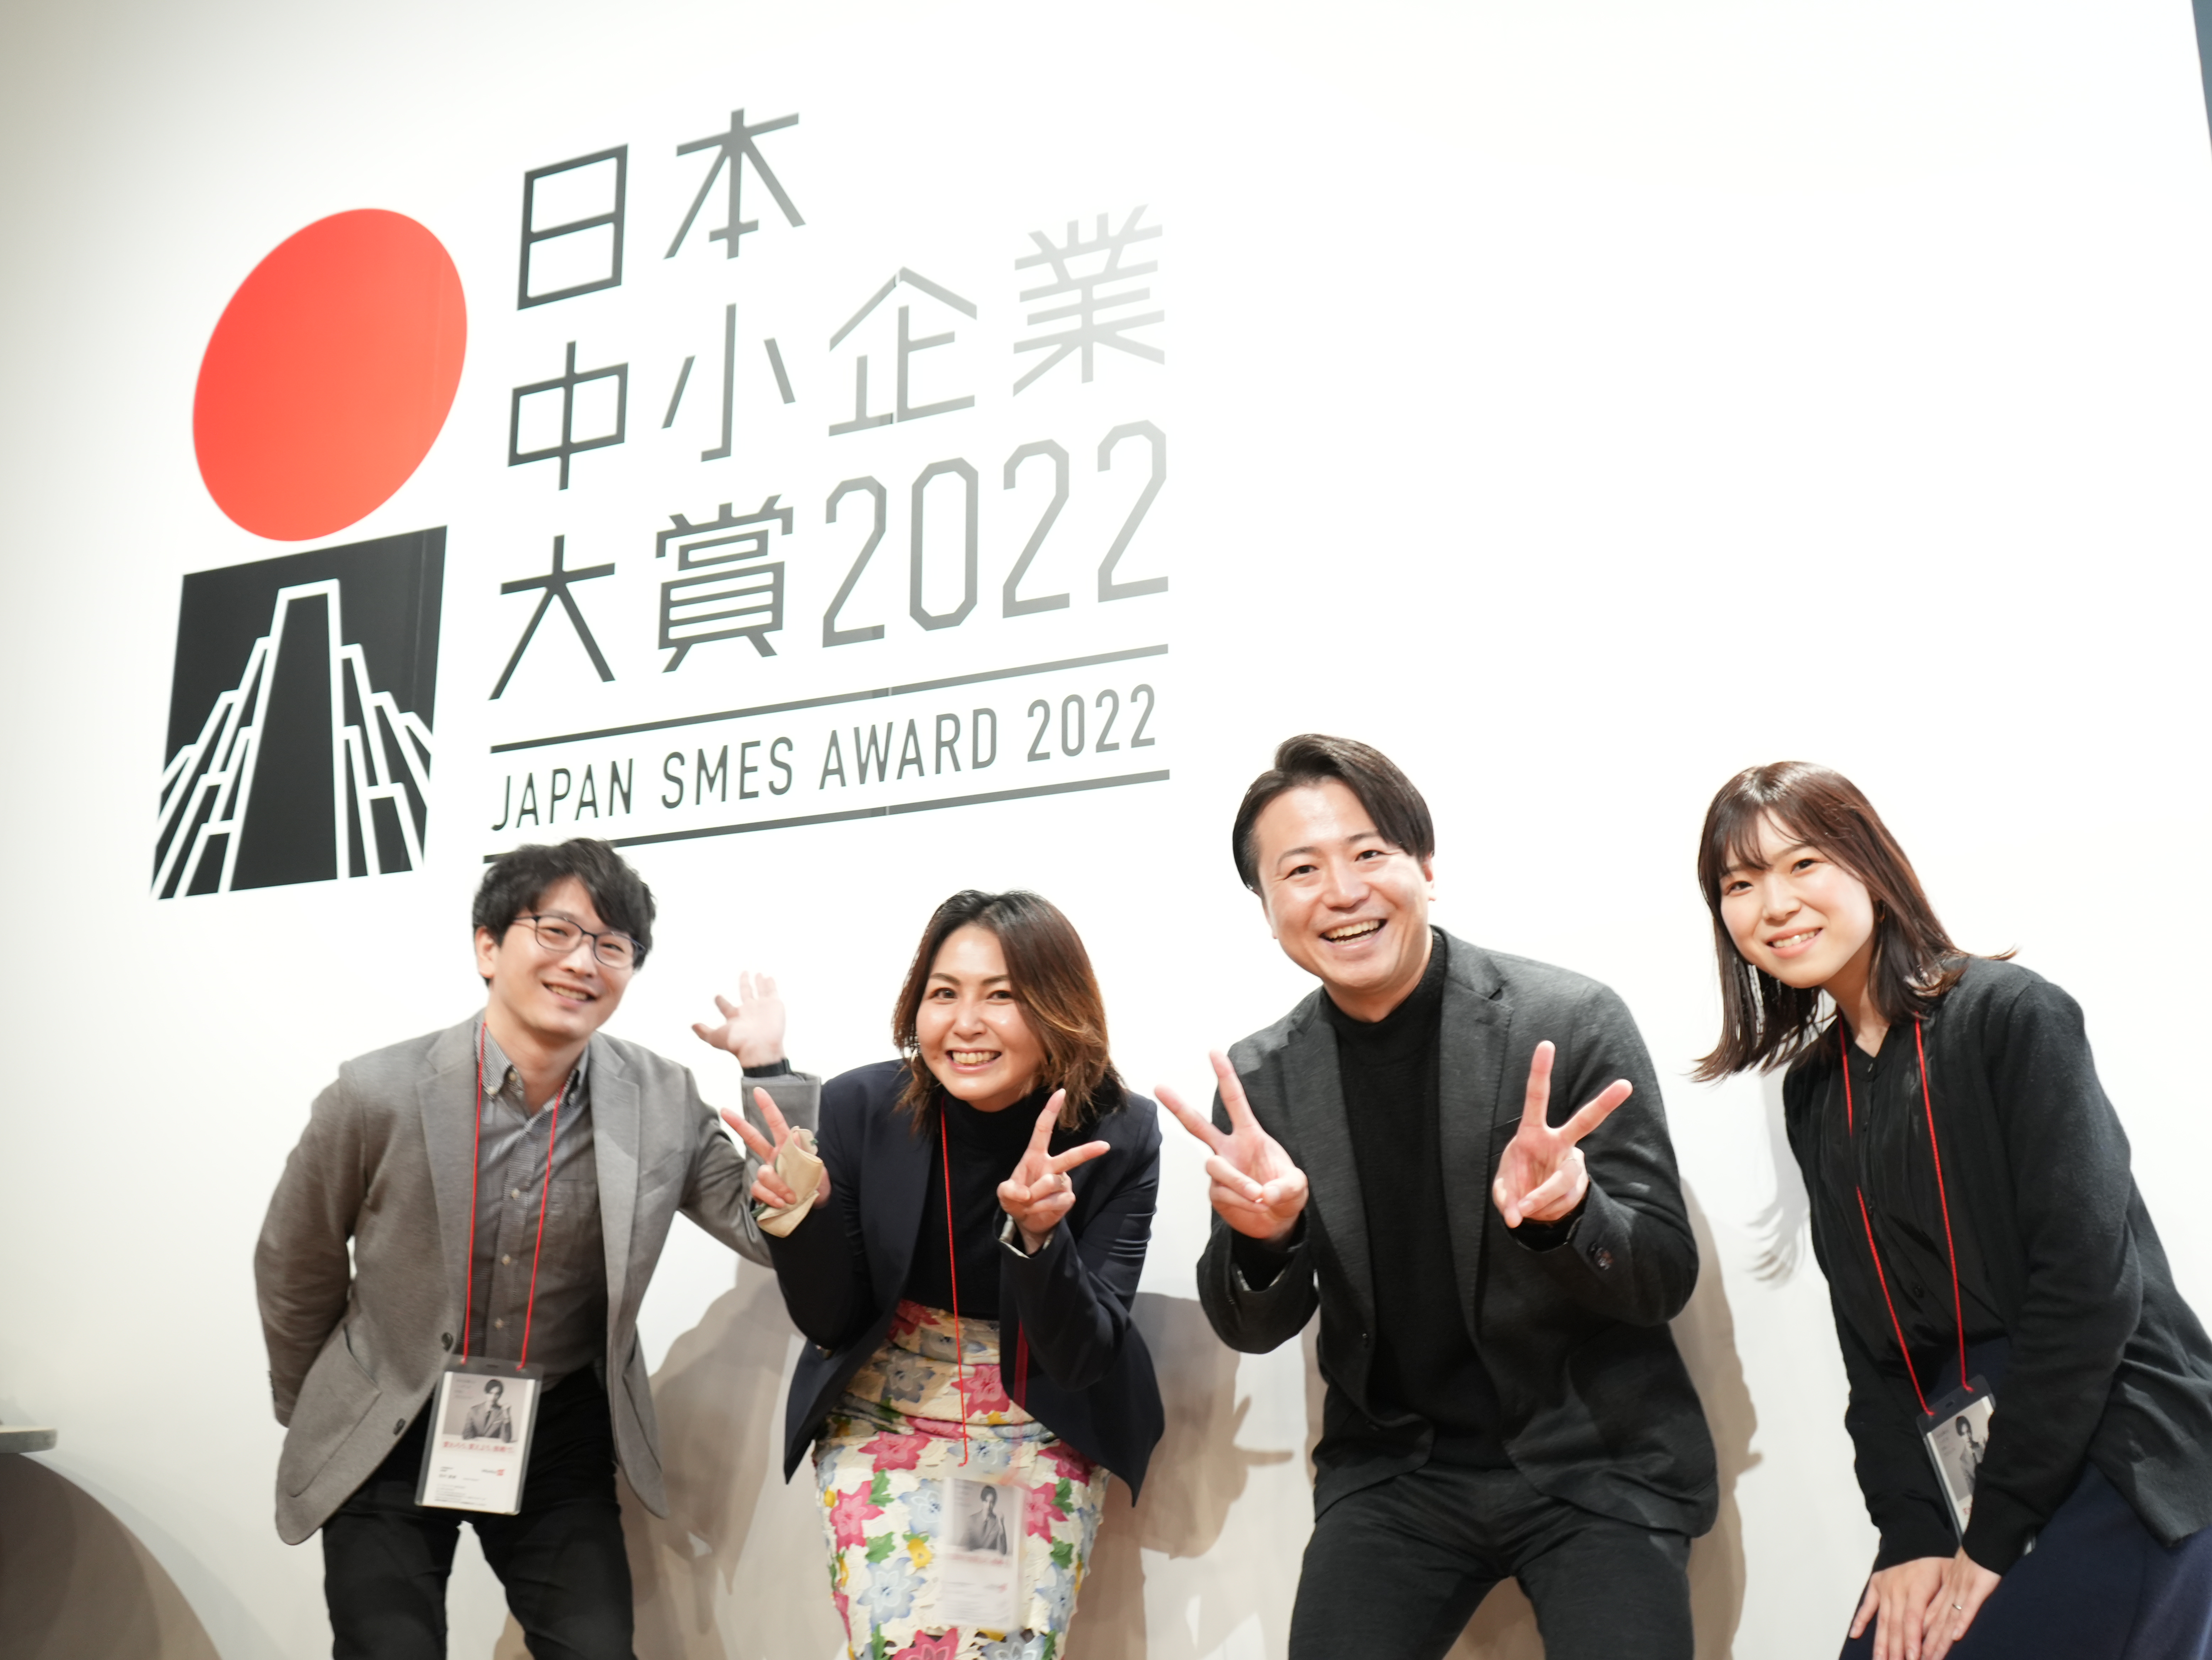 一般社団法人中小企業からニッポンを元気にプロジェクト主催「日本中小企業大賞 2022」にて、ノミネート企業に選出されました